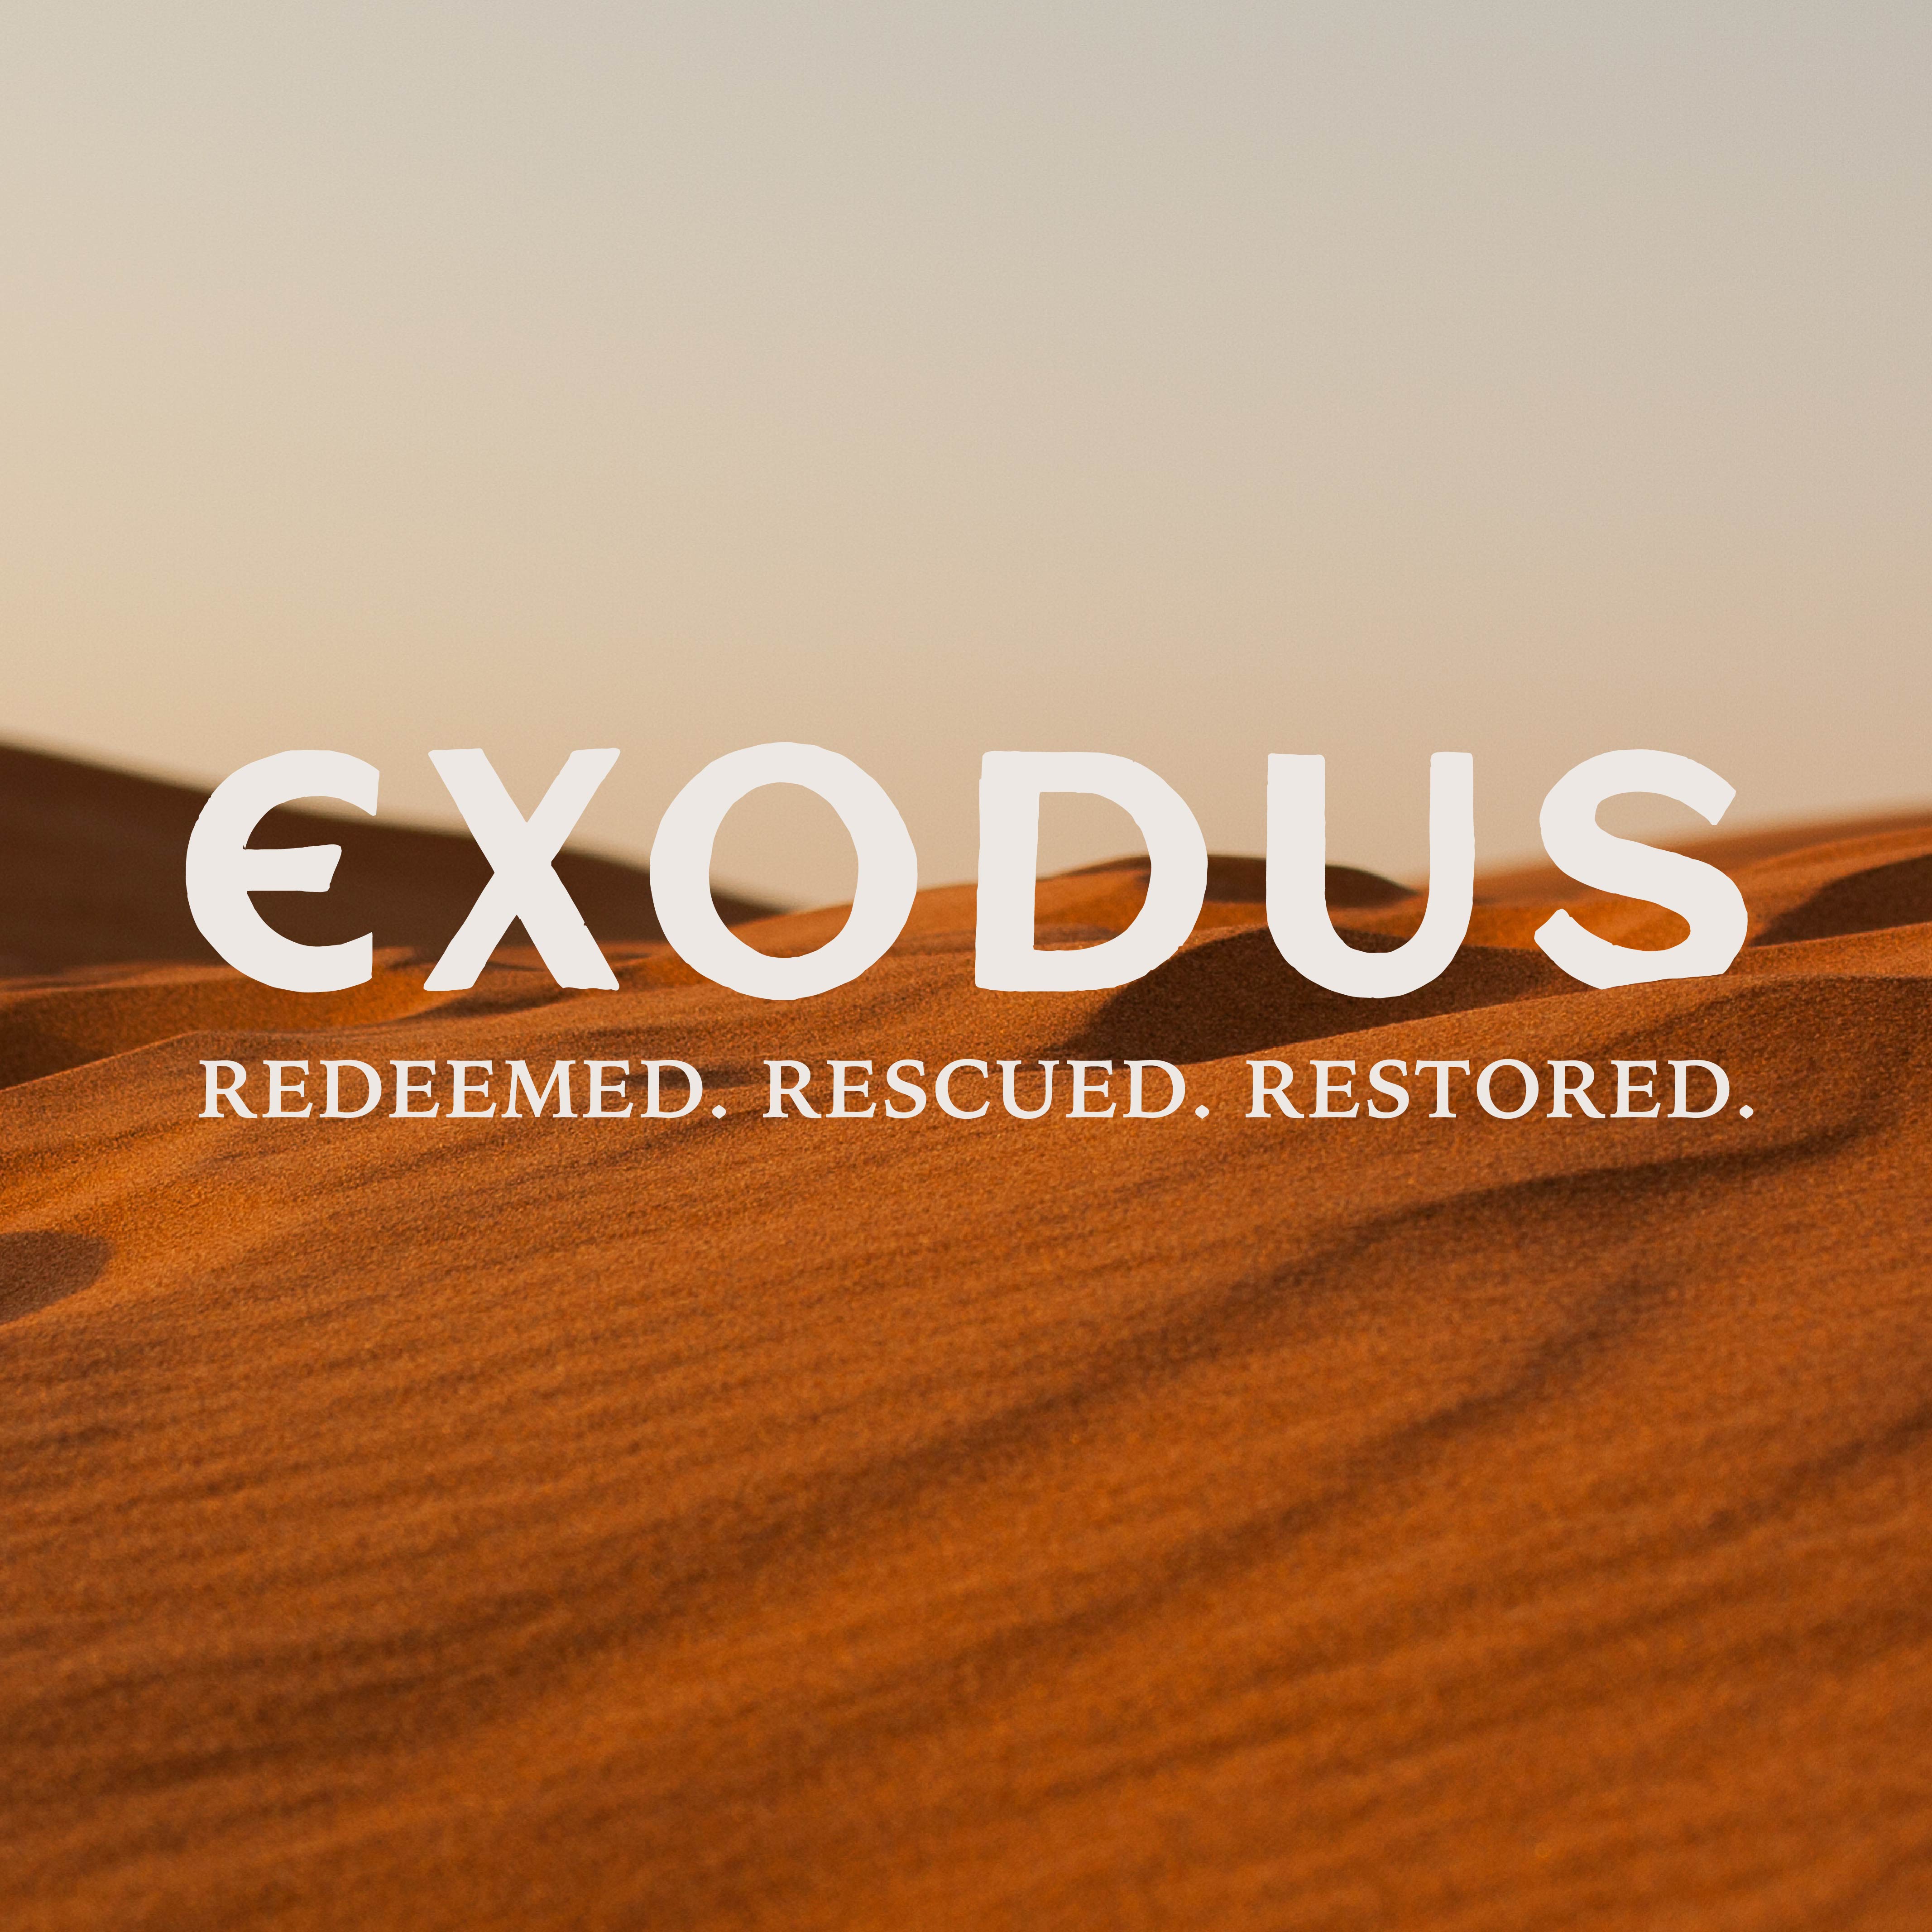 Exodus: Redeemed, Rescued, Restored